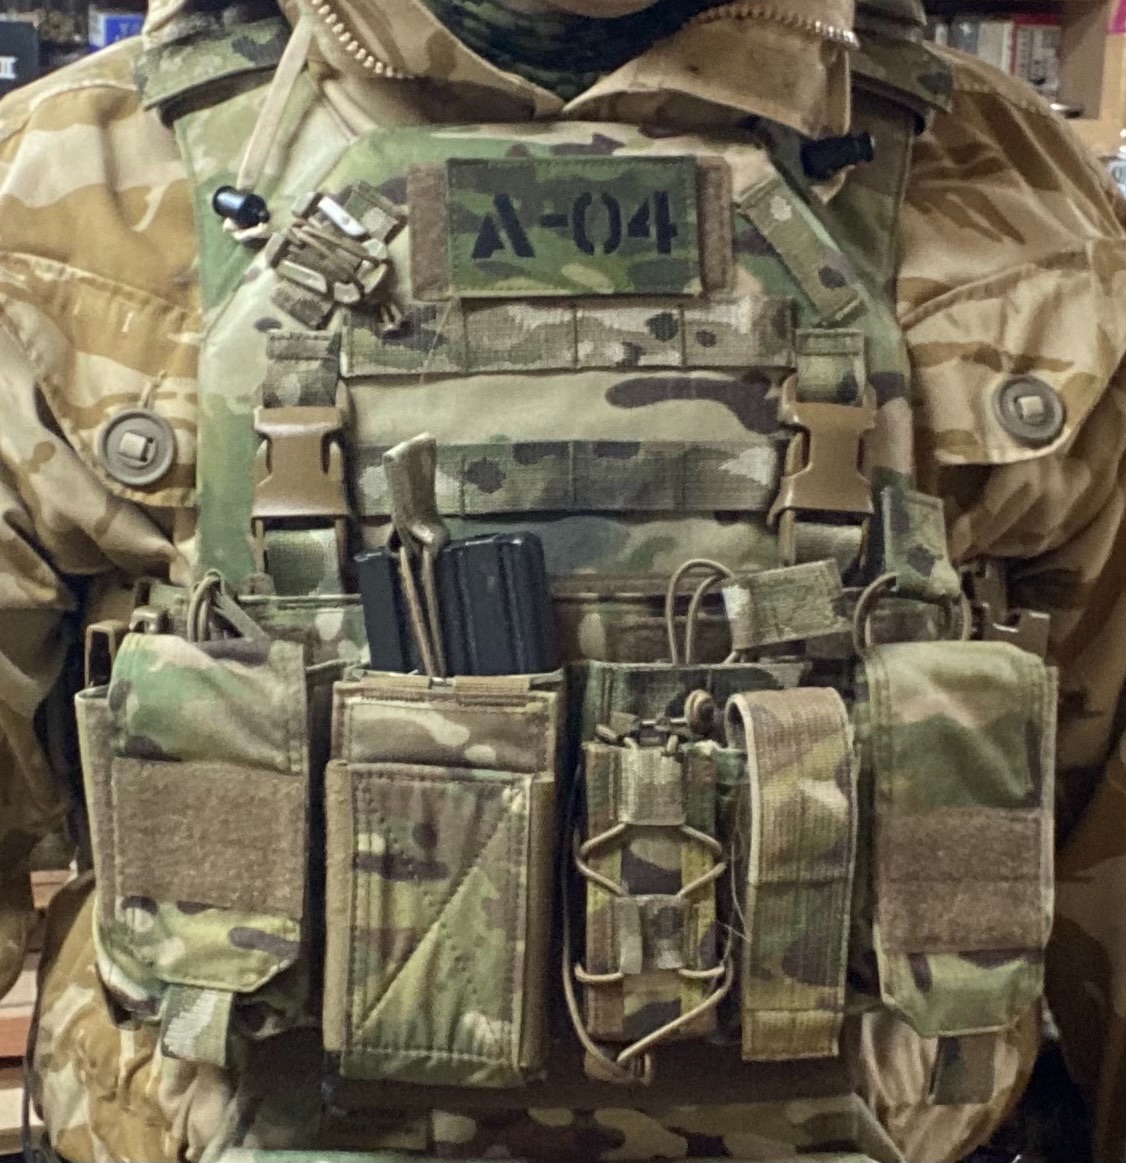 Warrior Pathfinder chest rig - Gear - Airsoft Forums UK